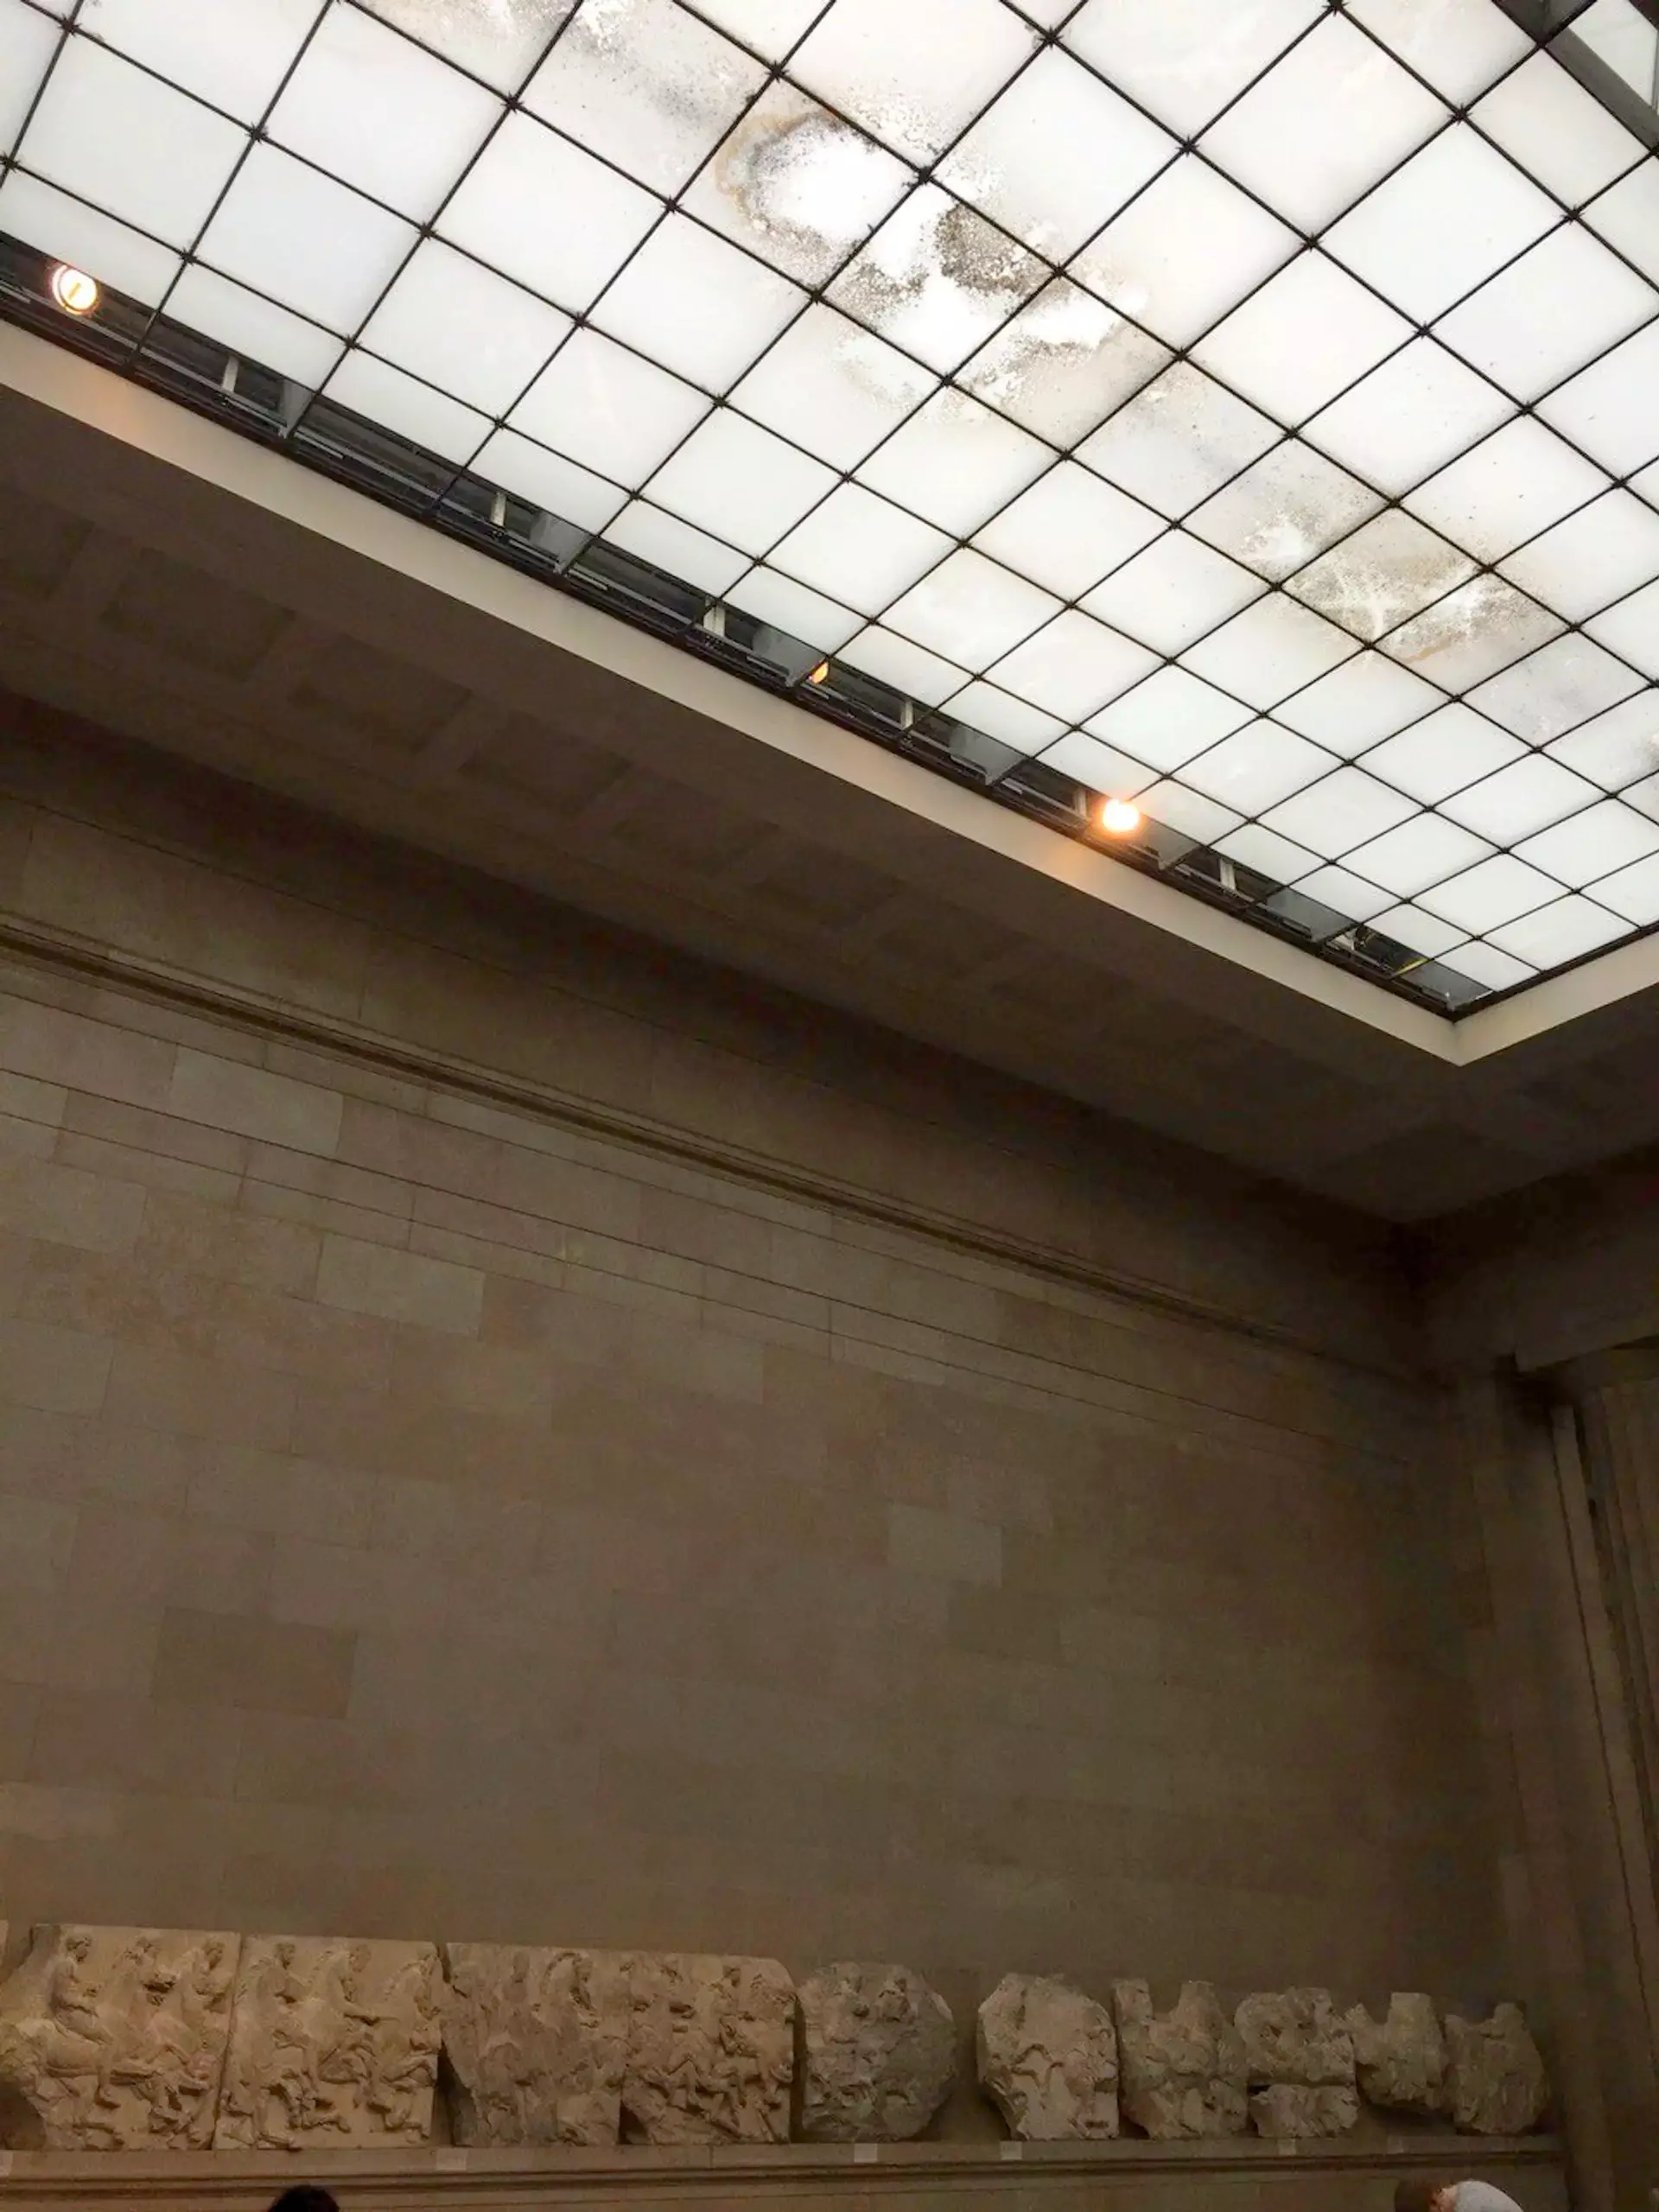 Η οροφή της αίθουσας των Γλυπτών του Παρθενώνα με πολλούς λεκέδες, ακριβώς πάνω από τη ζωφόρο στο Βρετανικό Μουσείο